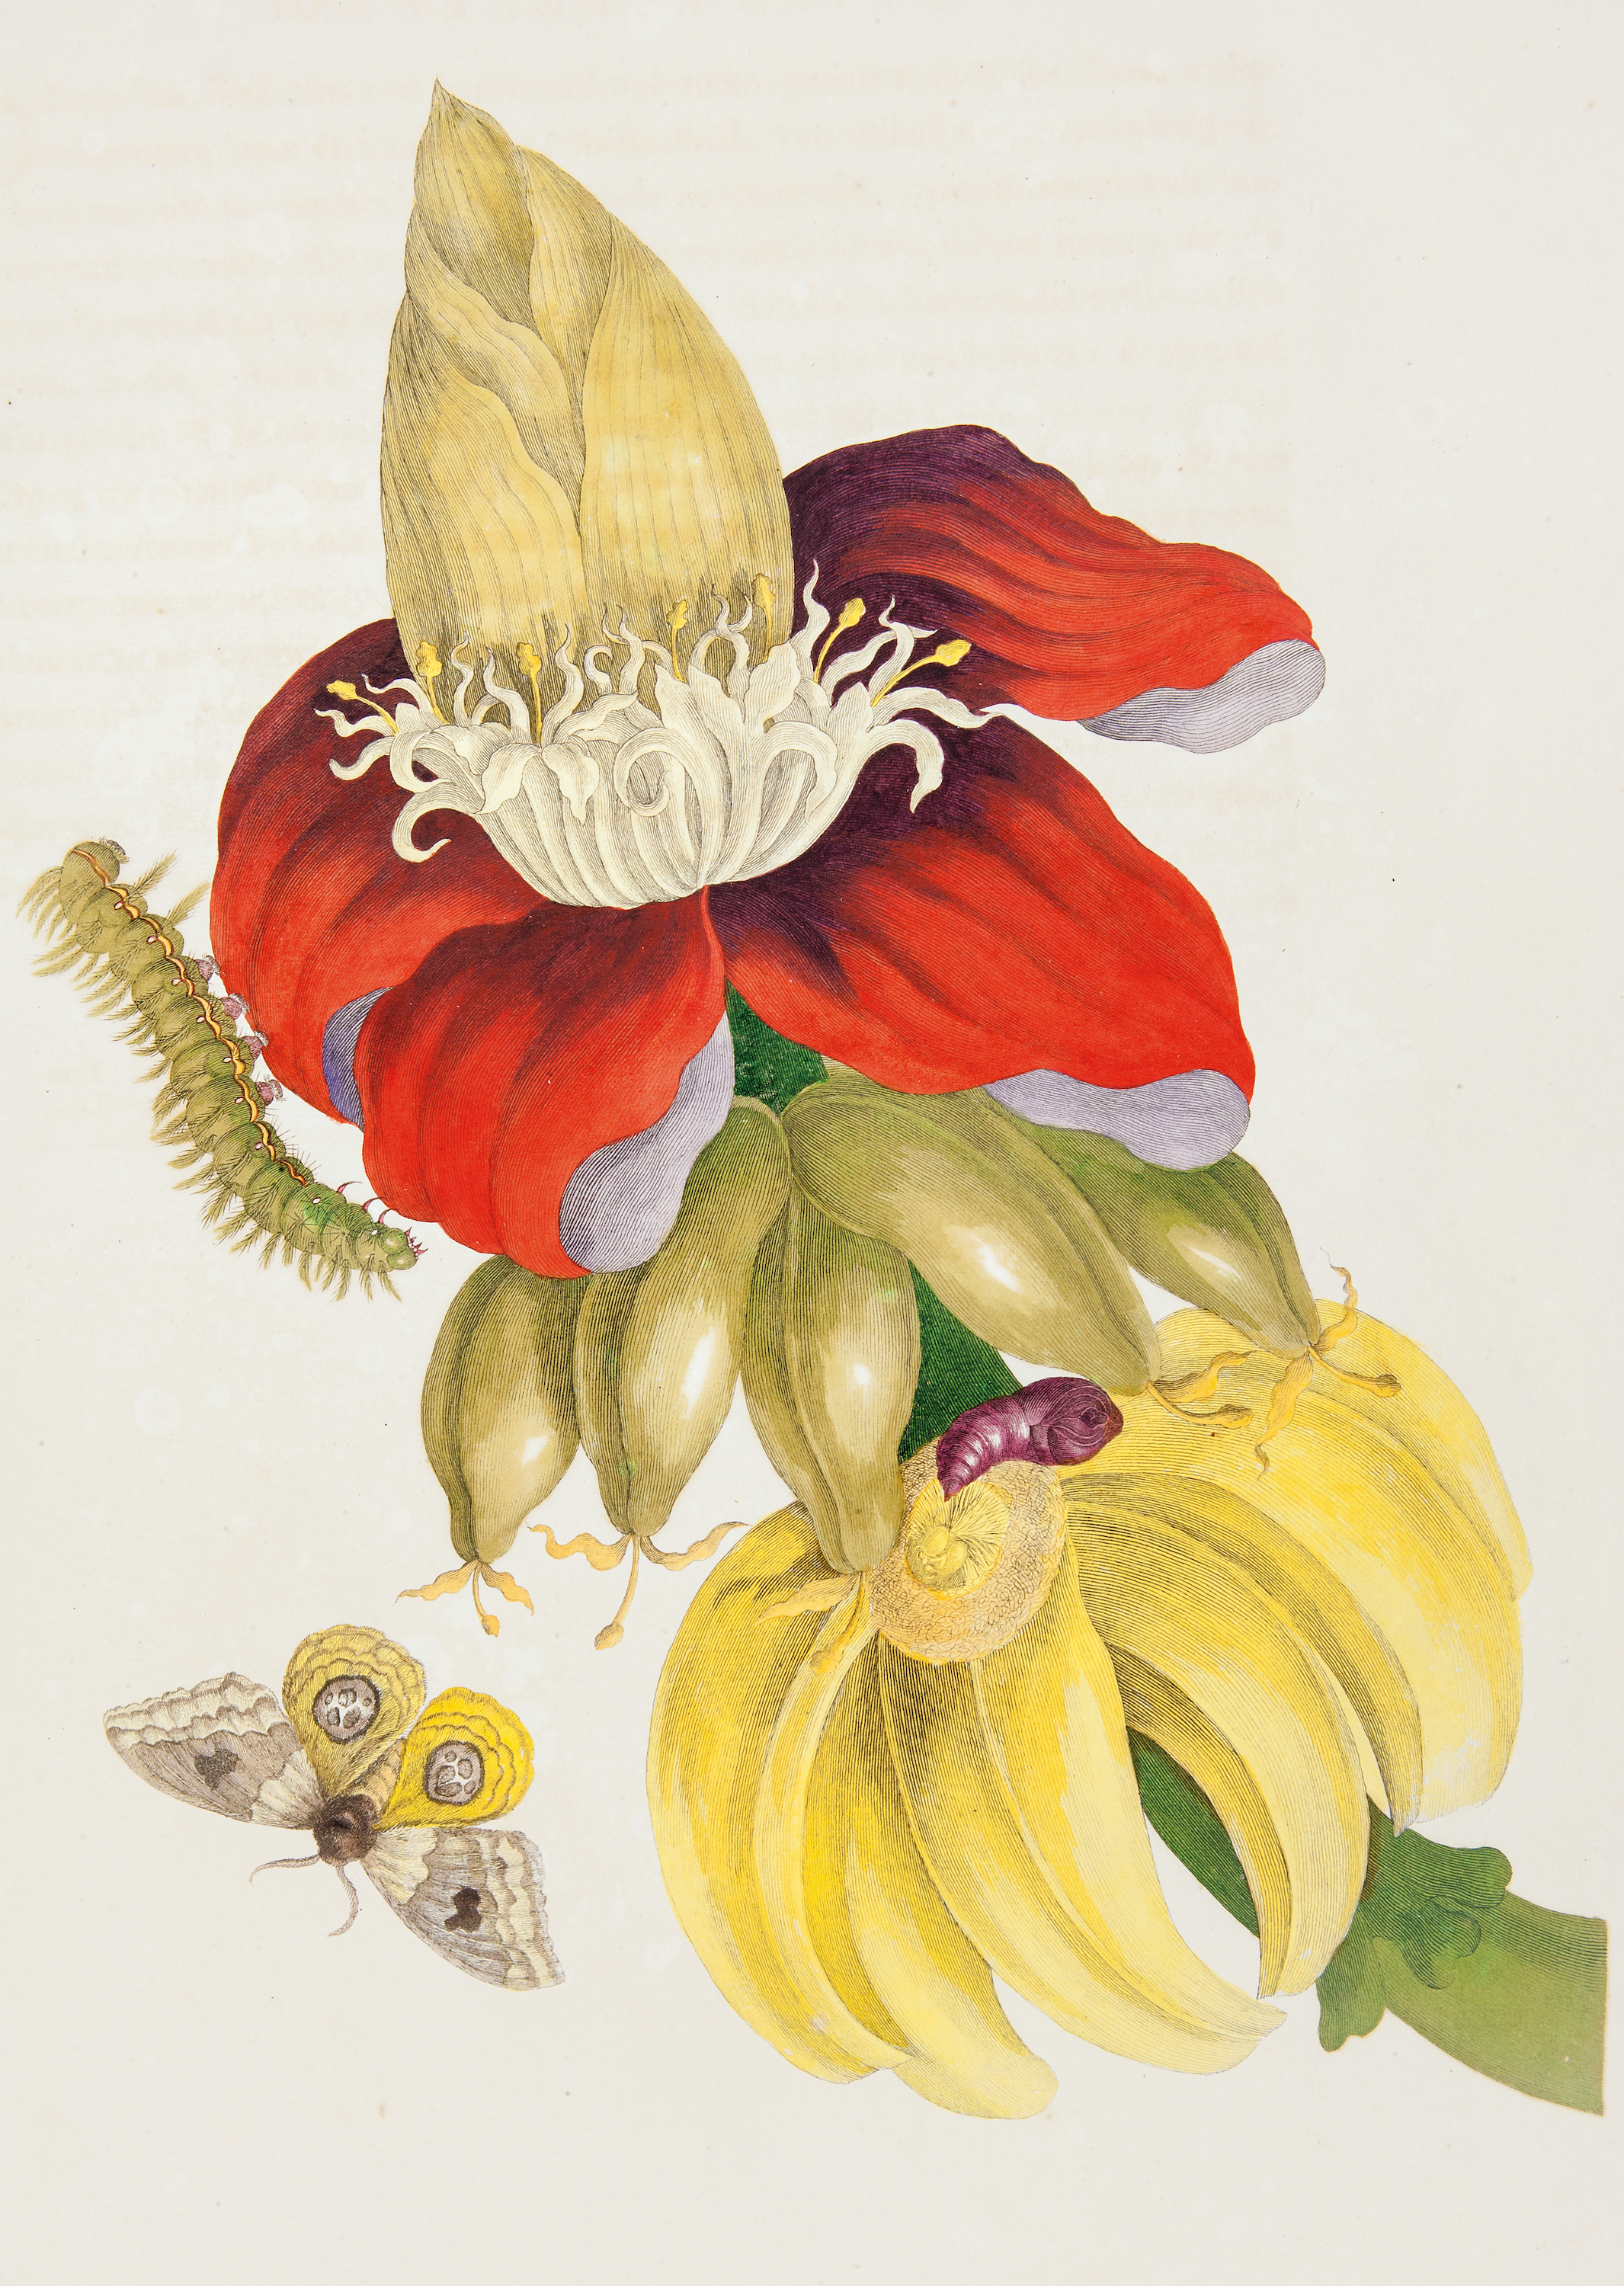 Plante de bananier et étapes de vie d’un papillon de nuit by Pieter Sluyter after Maria Sibylla Merian - 1705 